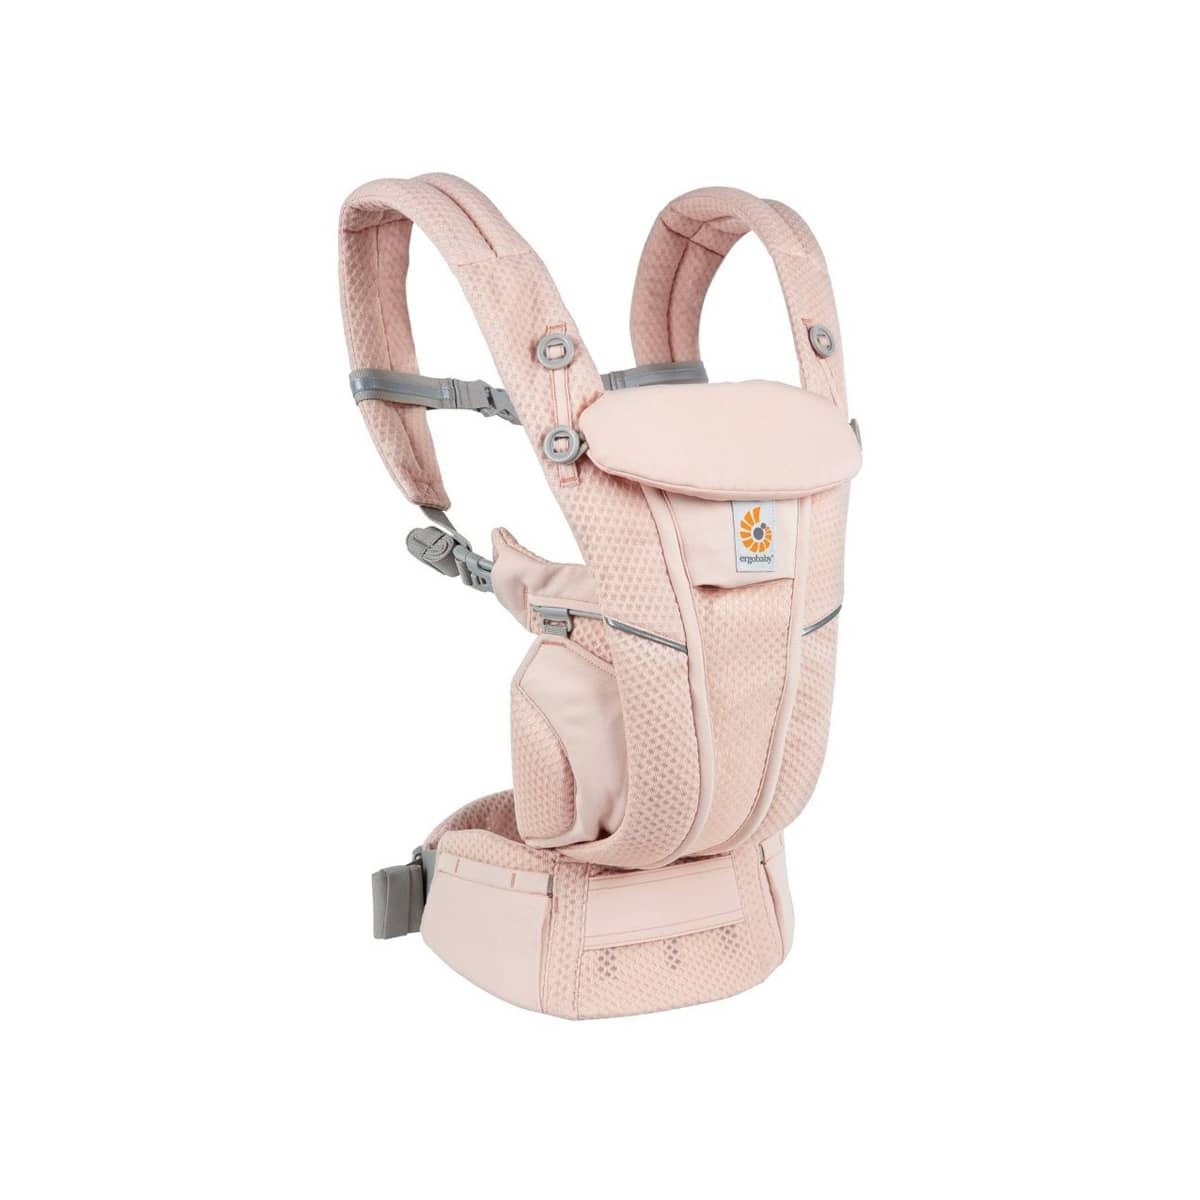 Omni Breeze Baby Carrier Pink Quartz Ergobaby - Babyshop